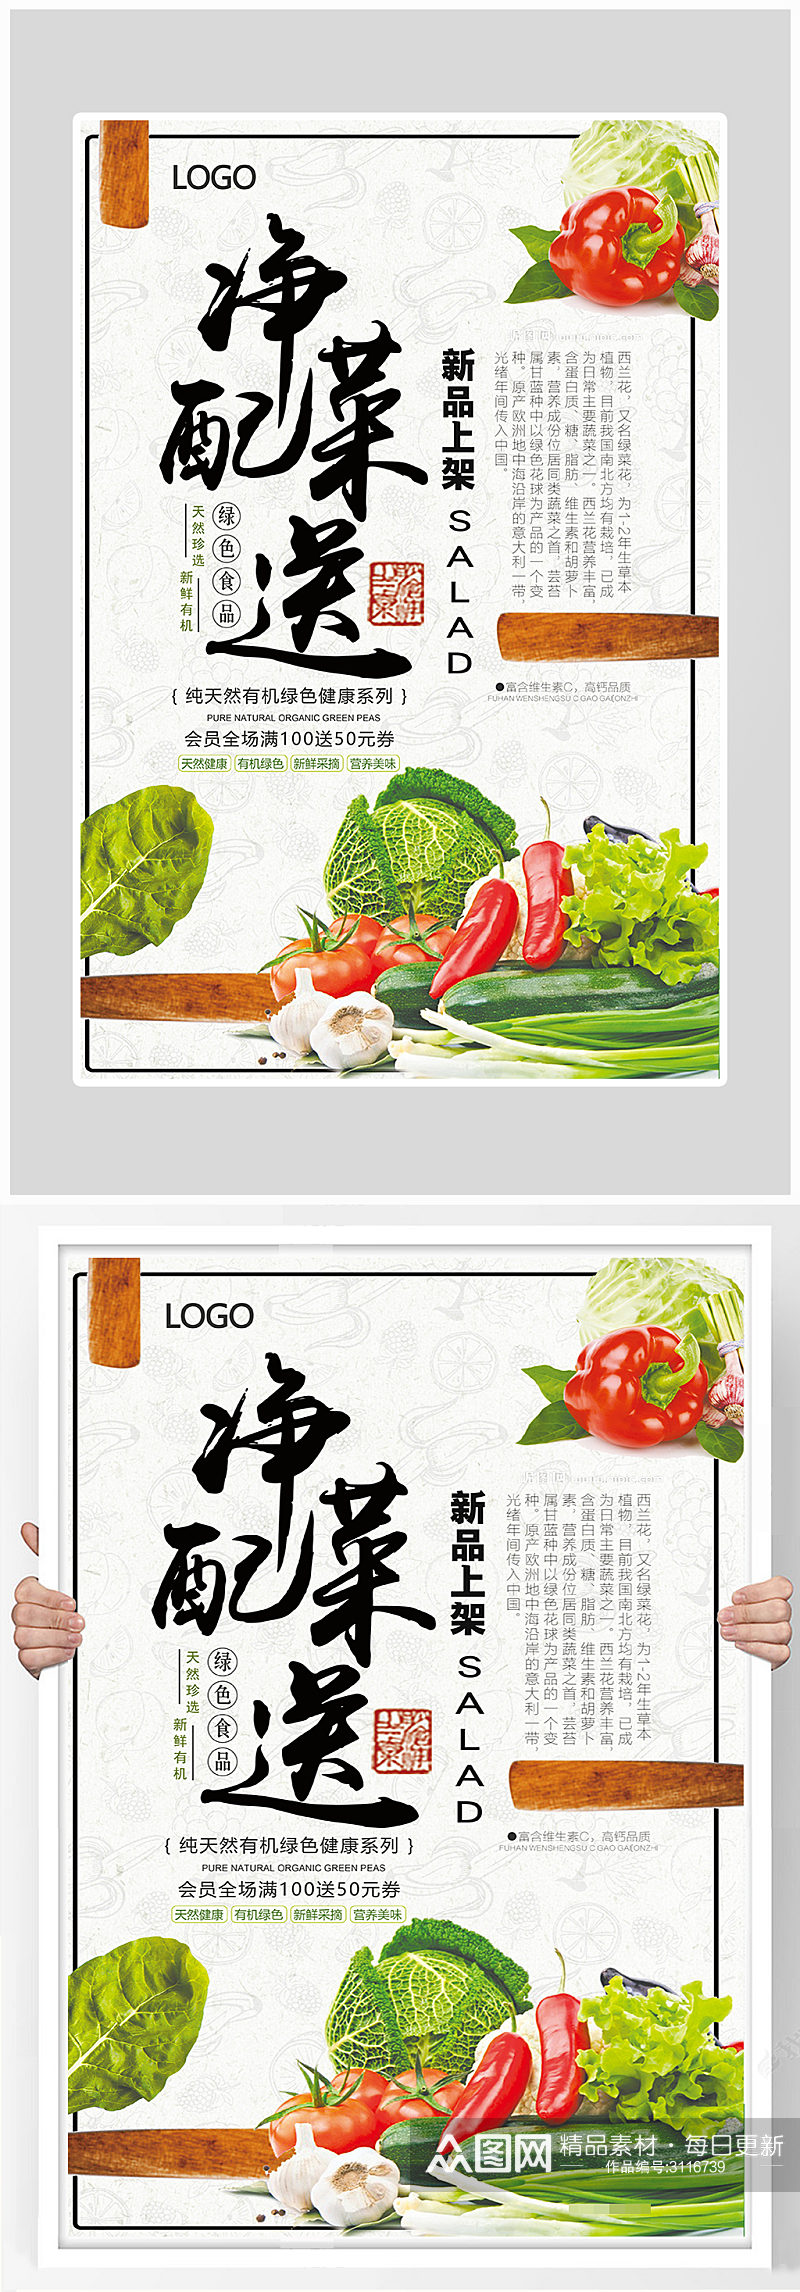 创意简约健康蔬菜海报设计素材